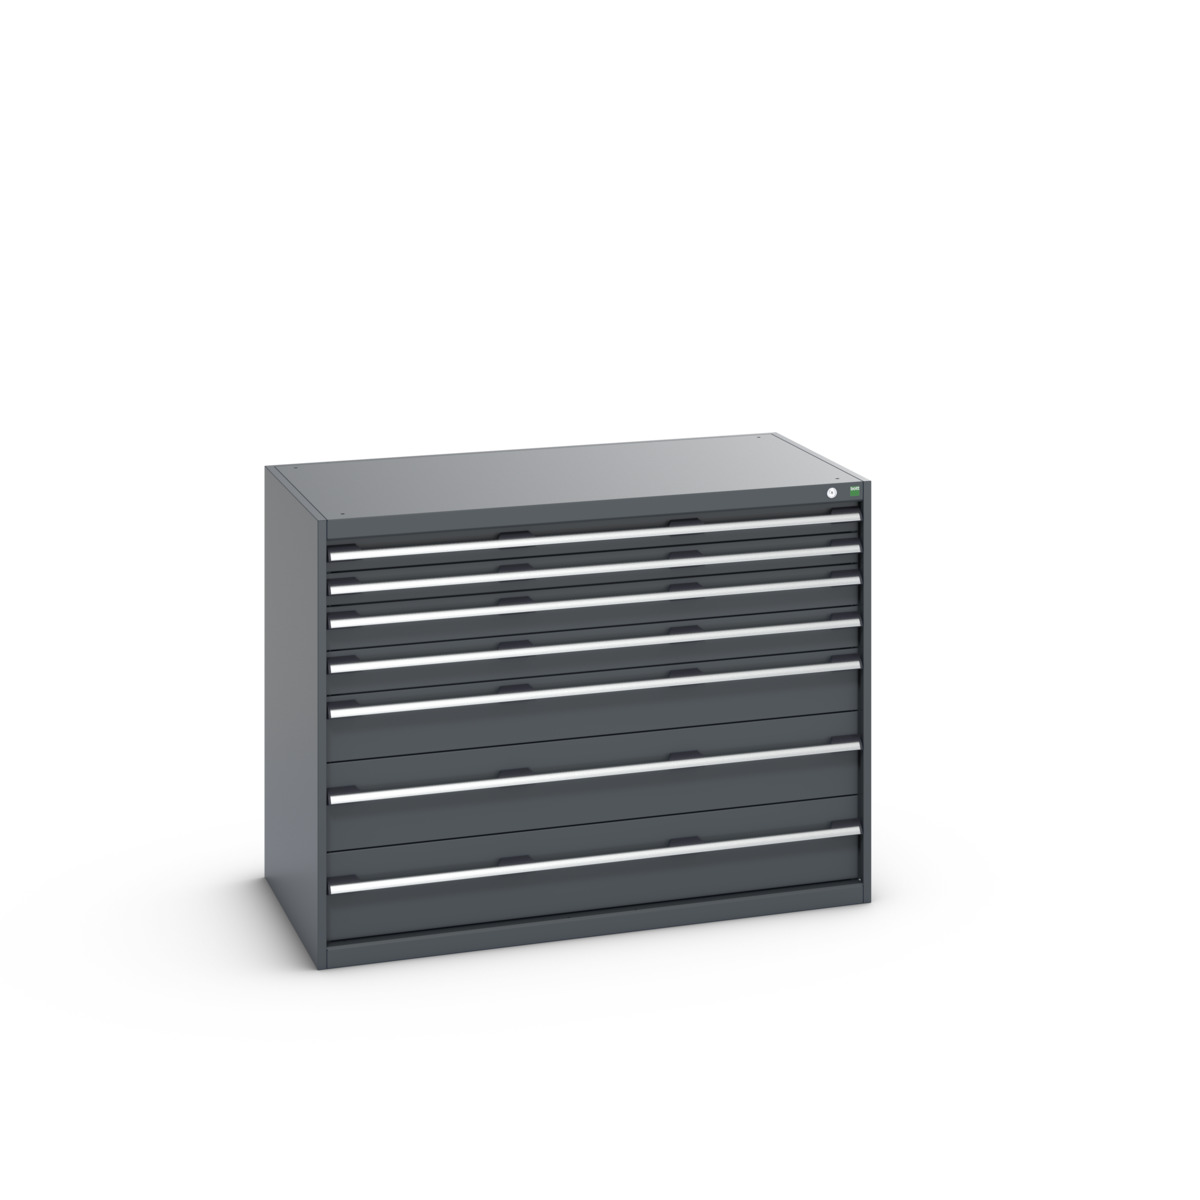 40030016.77V - cubio drawer cabinet